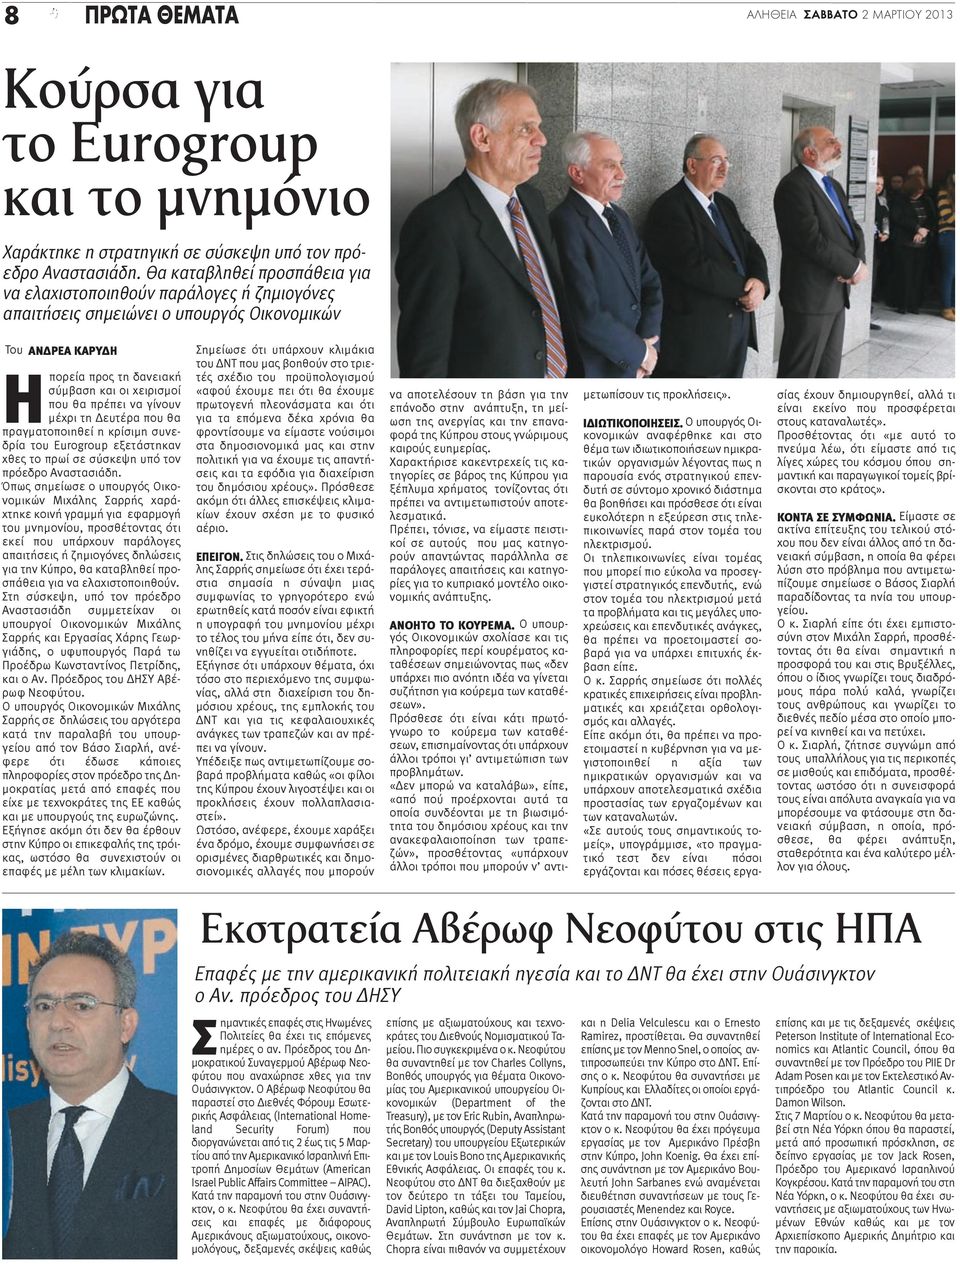 να γίνουν μέχρι τη Δευτέρα που θα πραγματοποιηθεί η κρίσιμη συνεδρία του Eurogroup εξετάστηκαν χθες το πρωί σε σύσκεψη υπό τον πρόεδρο Αναστασιάδη.